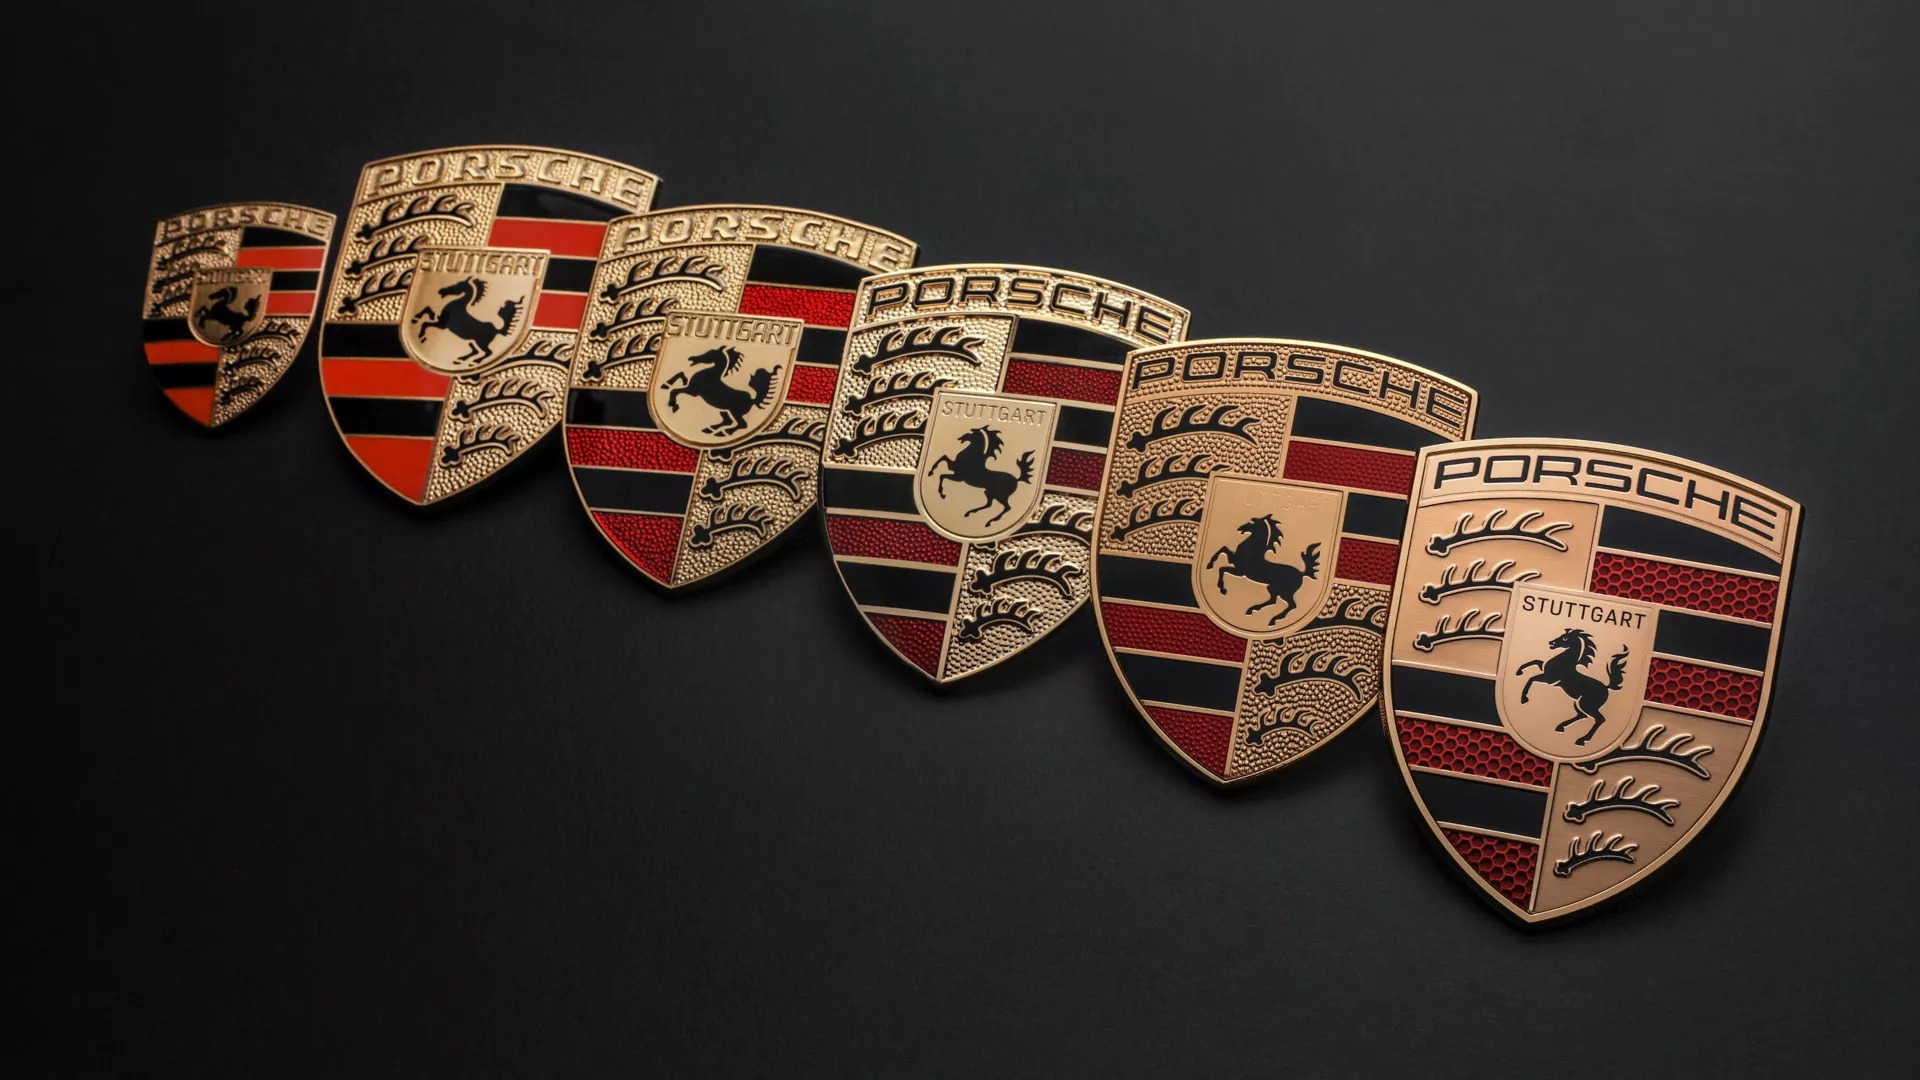 Porsche đổi logo, sẽ sử dụng bắt đầu từ Panamera đời mới ra mắt cuối năm - Ảnh 2.